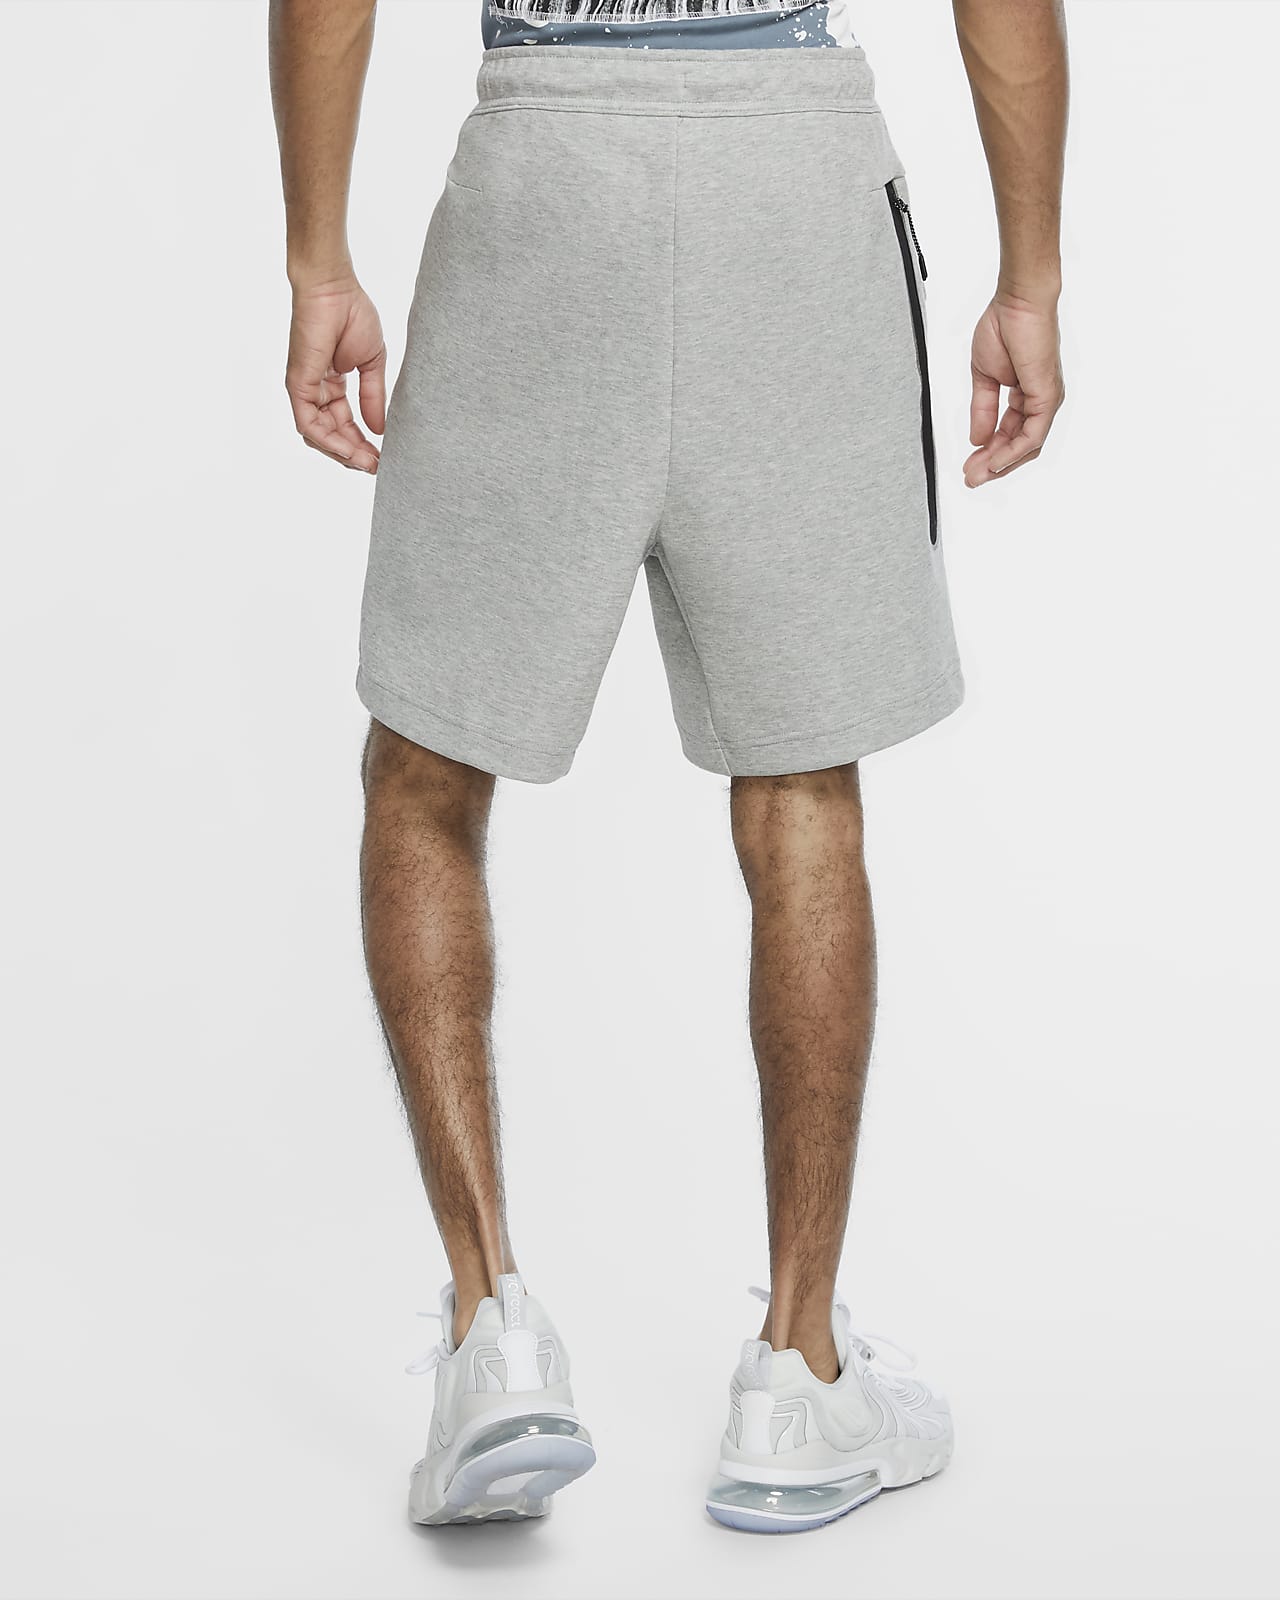 grey nike shorts mens